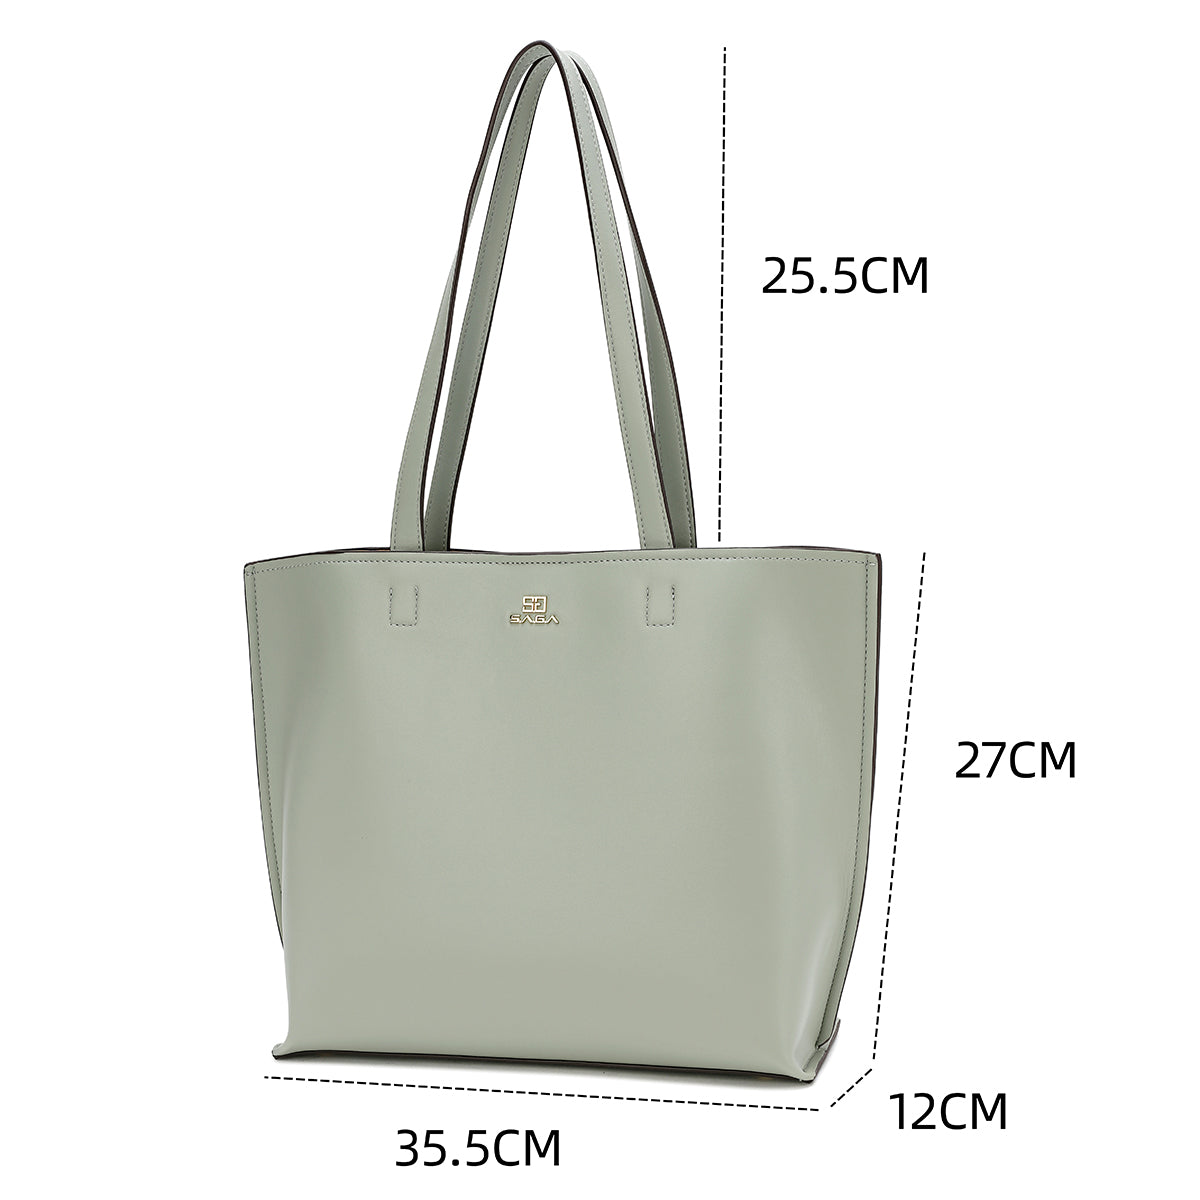 حقيبة يد واسعة وكلاسيكية بسيطة بعدة ألوان